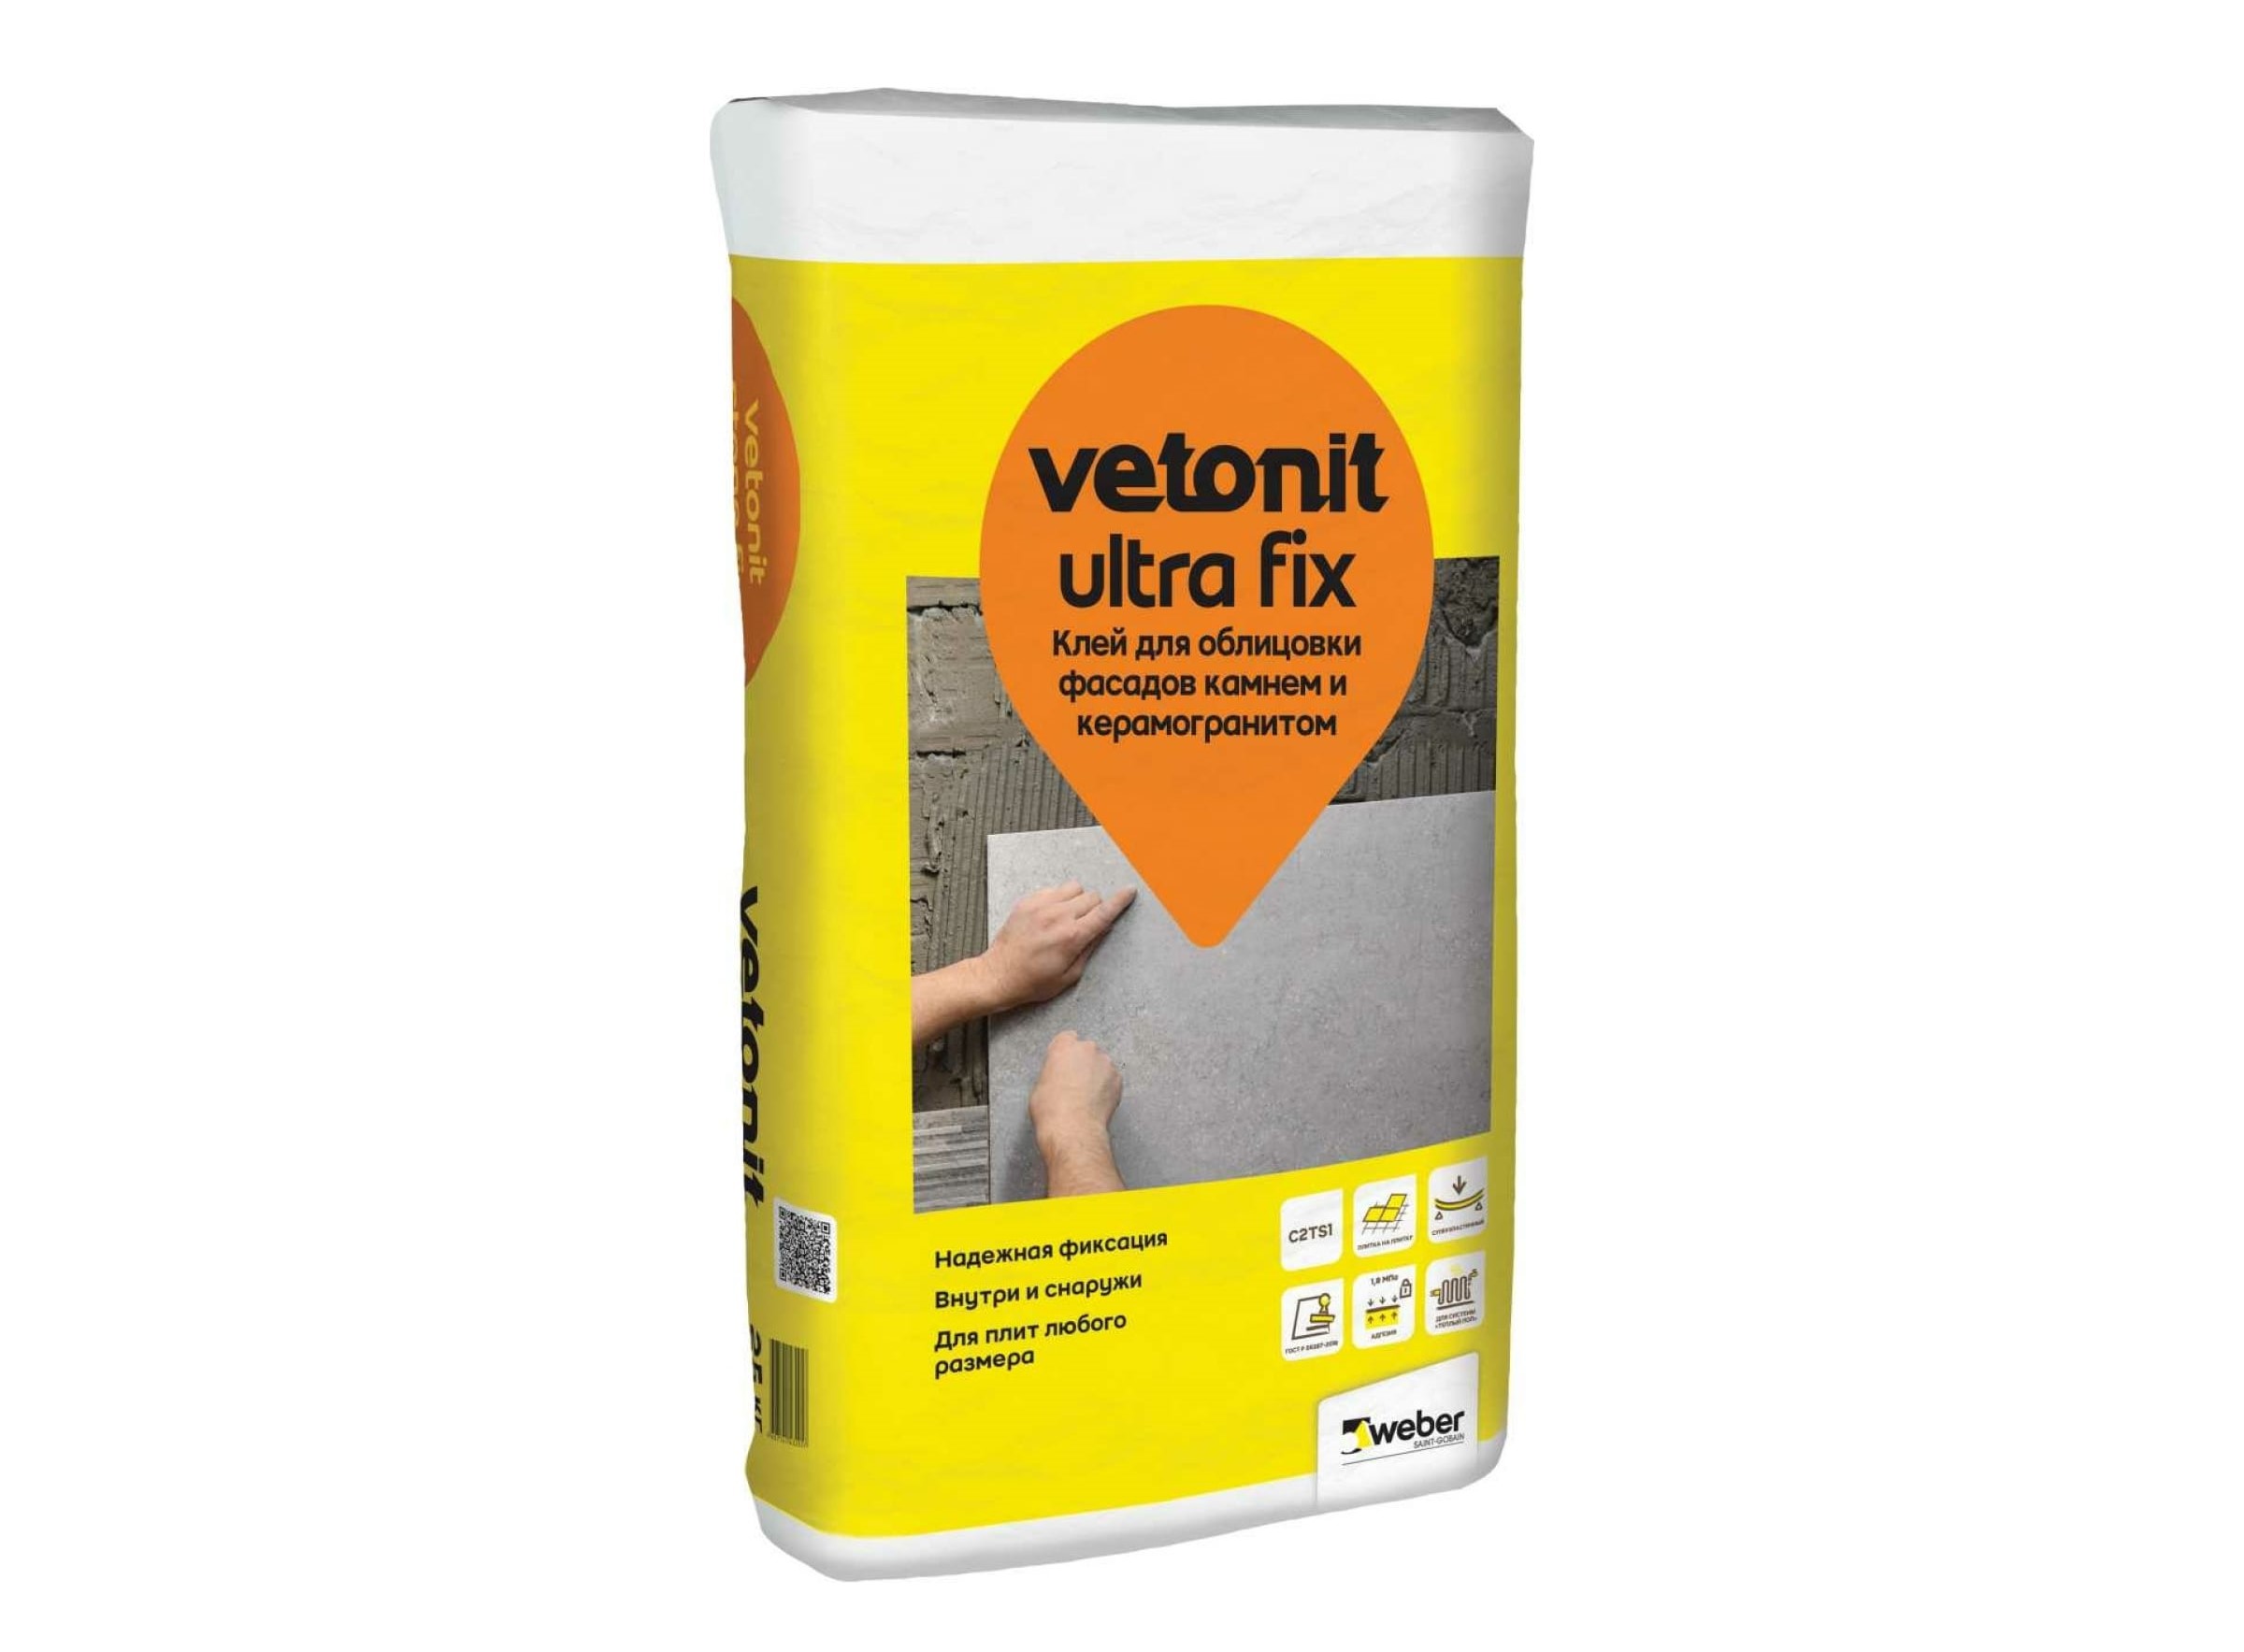 Клей Vetonit ultra fix для облицовки фасадов камнем и керамогранитом 25 kg 1001905